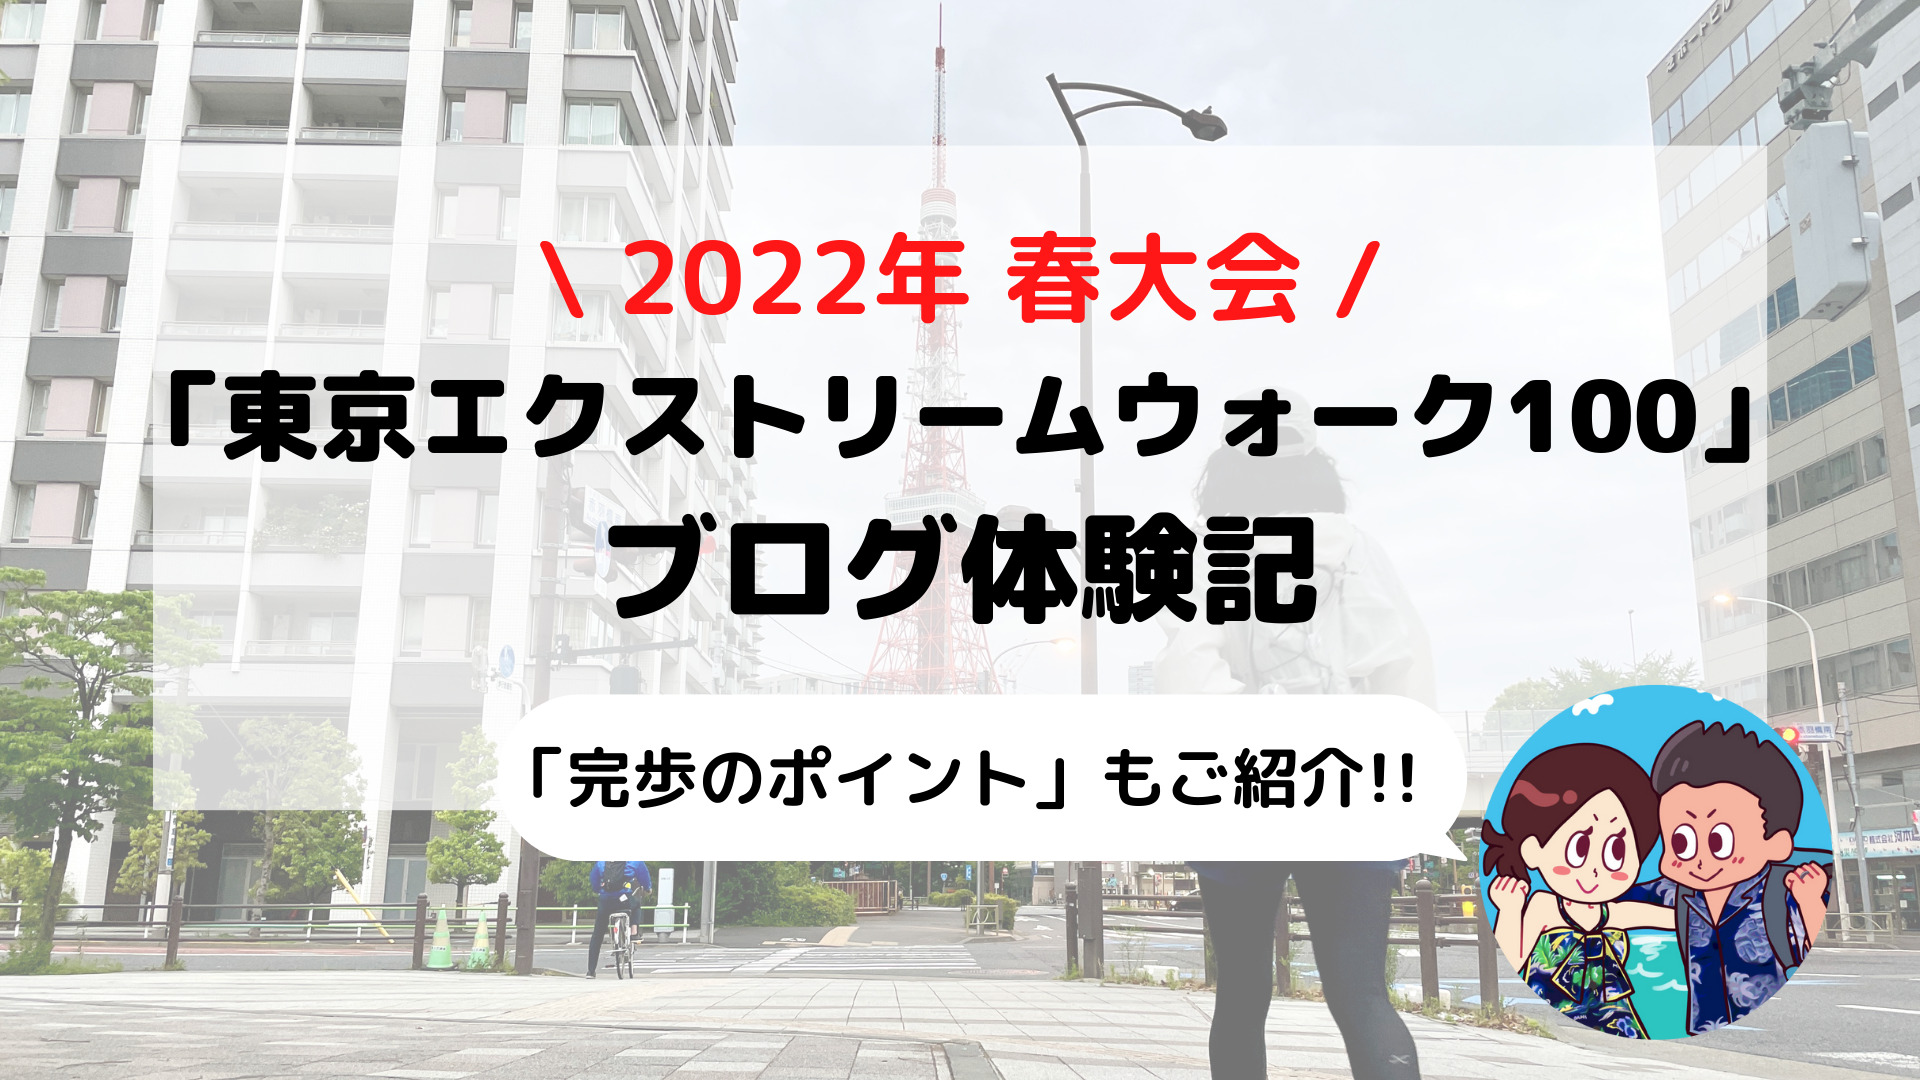 【東京エクストリームウォーク100】ブログ体験記 小田原から青山まで歩いてみた(2022年春大会)